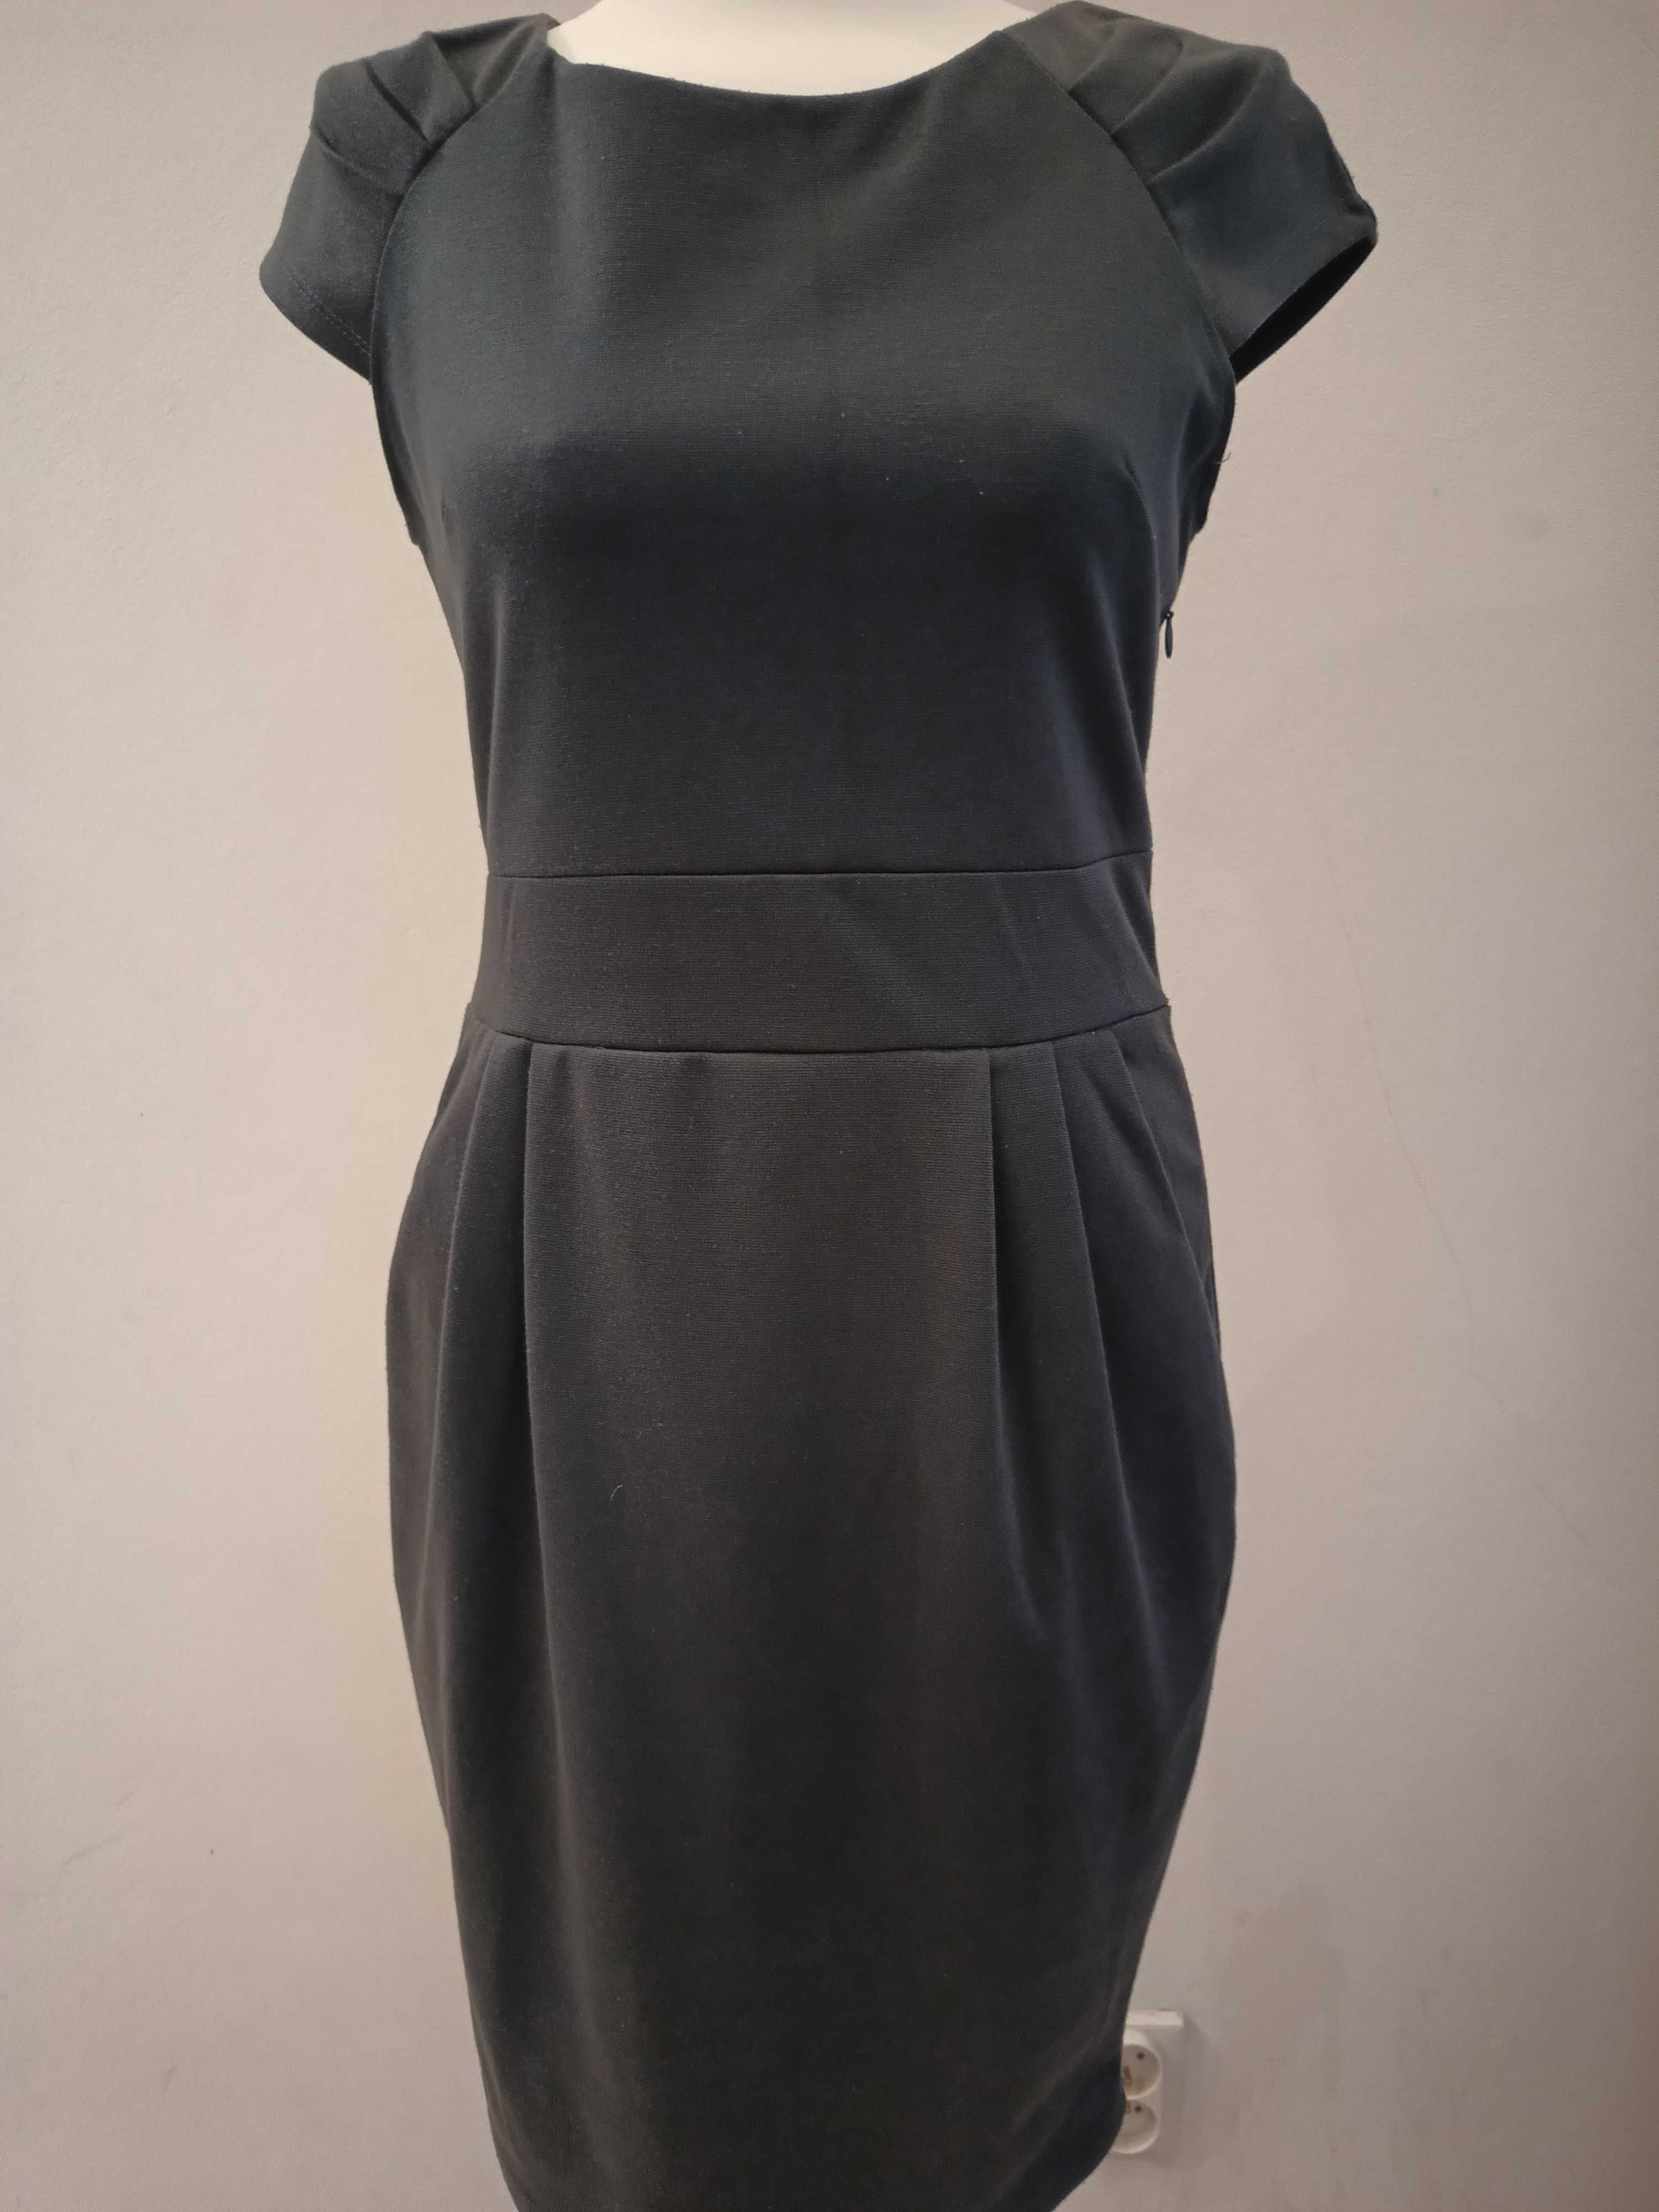 Klasyczna Sukienka Ołówkowa w Odcieniu Ciemno-Siwym, Idealna do Pracy